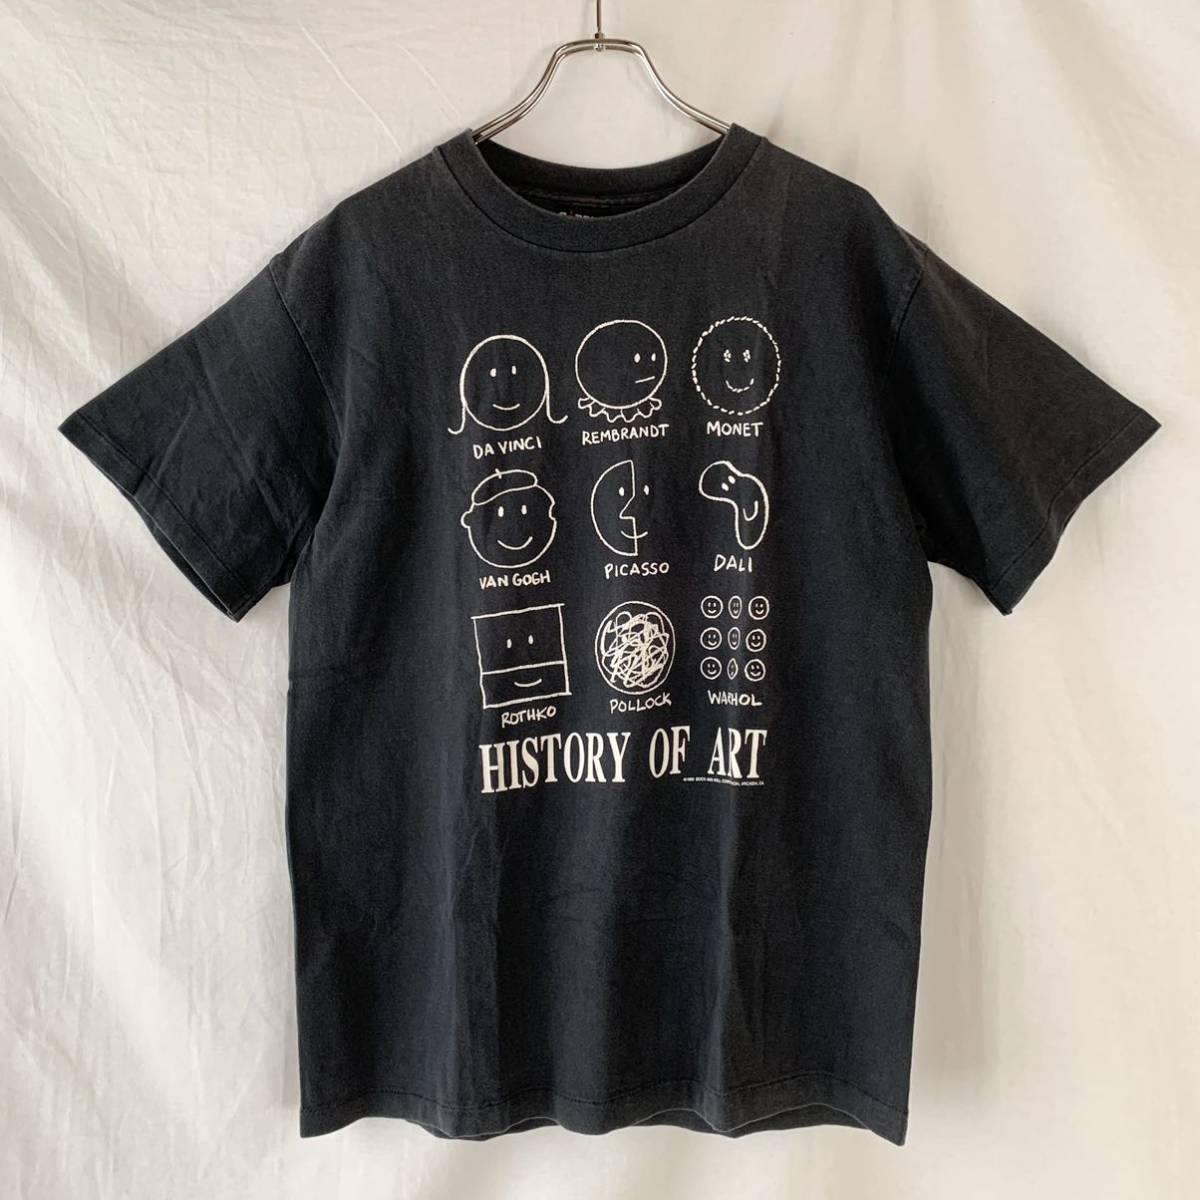 90s USA производства HISTORY OF ART Vintage искусство футболка черный чёрный Anne ti War держатель Limo nego ho Picasso da vinchi L GIANT